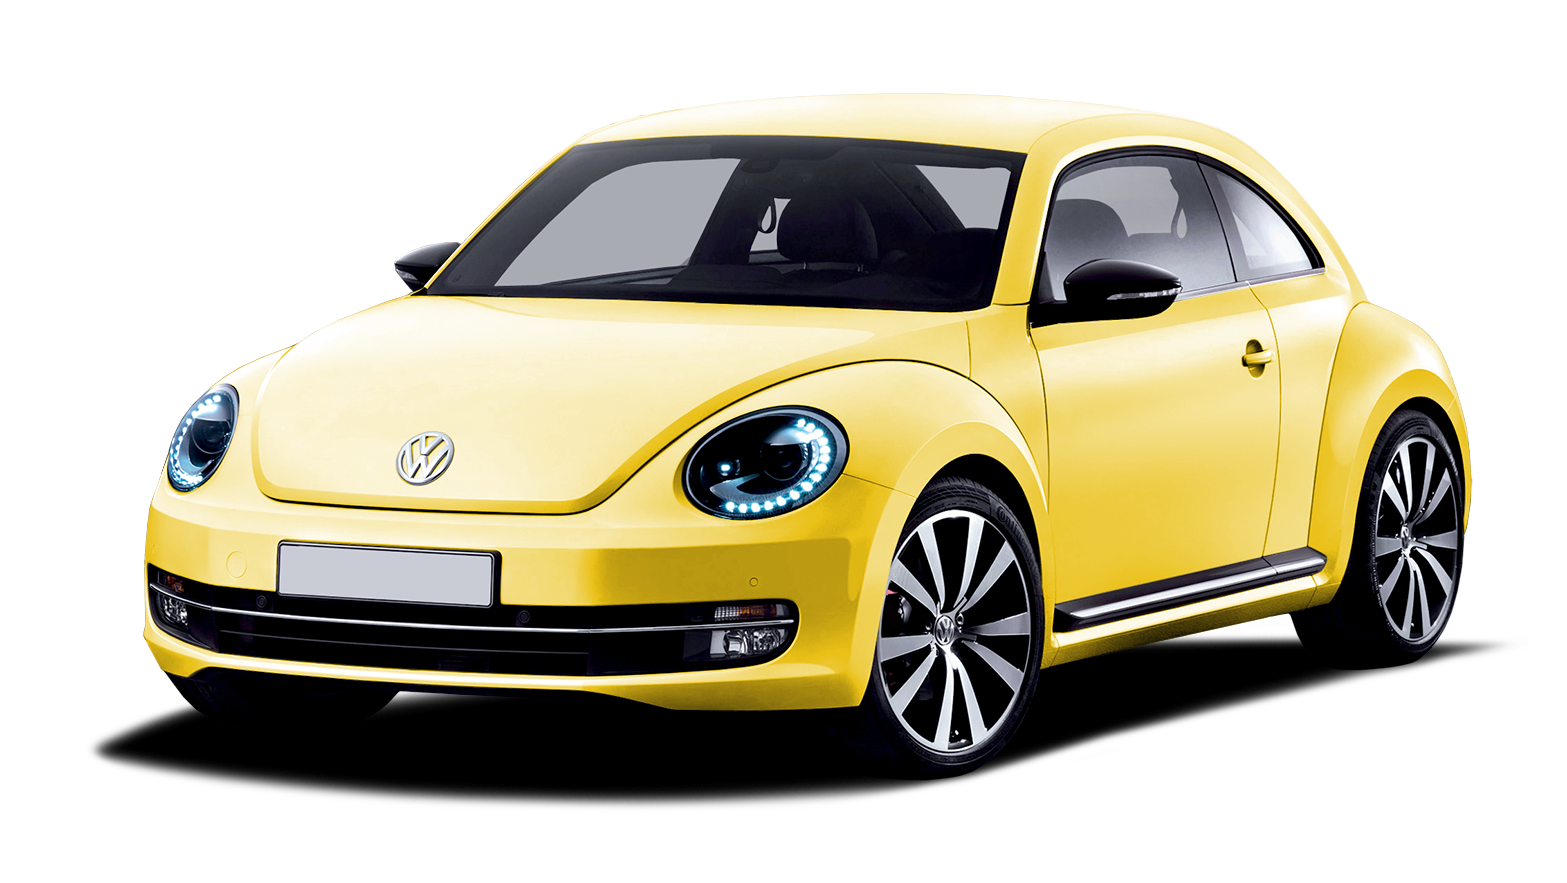 Yellow Volkswagen Beetle PNG car image